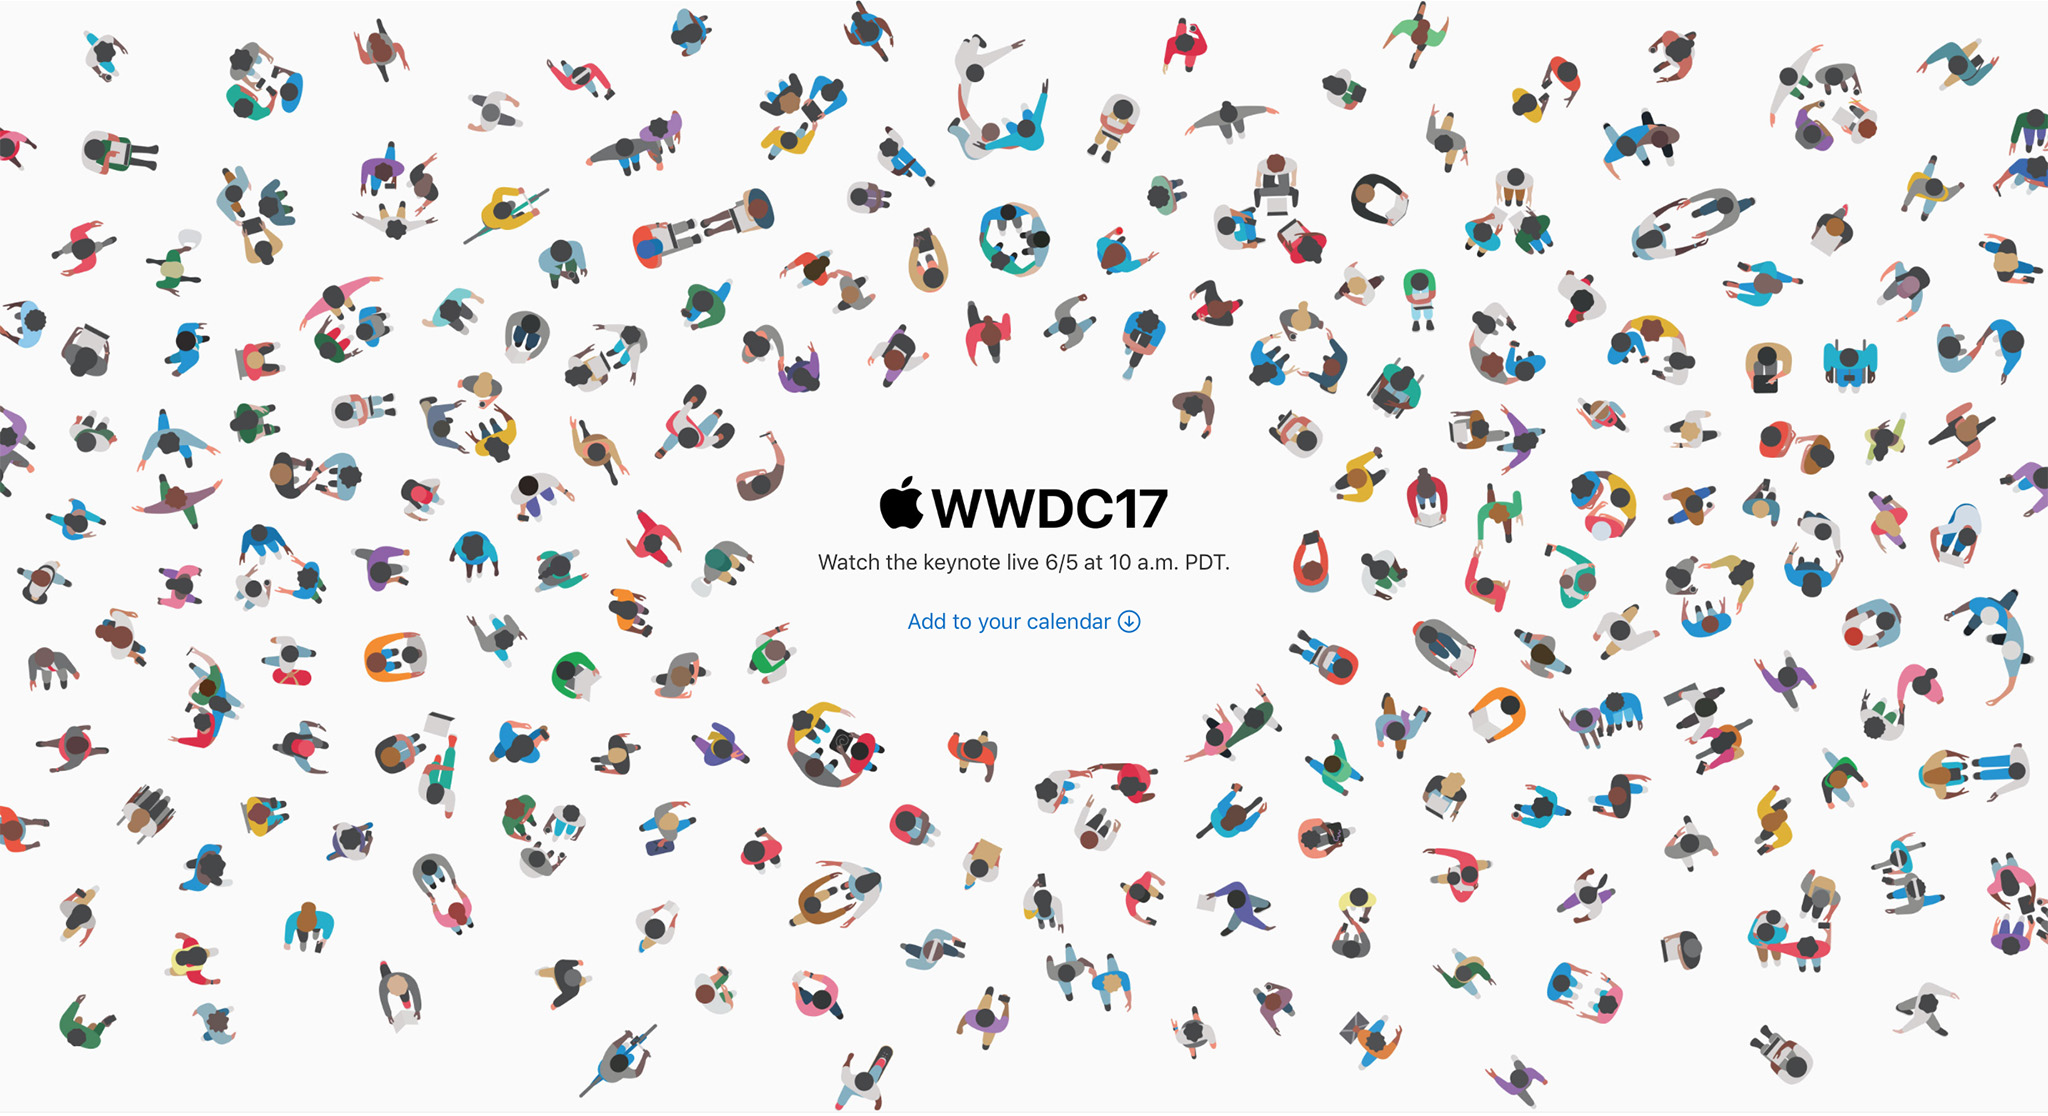 [Hỏi Tinh Tế] Bạn nghĩ gì về tấm hình của Apple WWDC17?